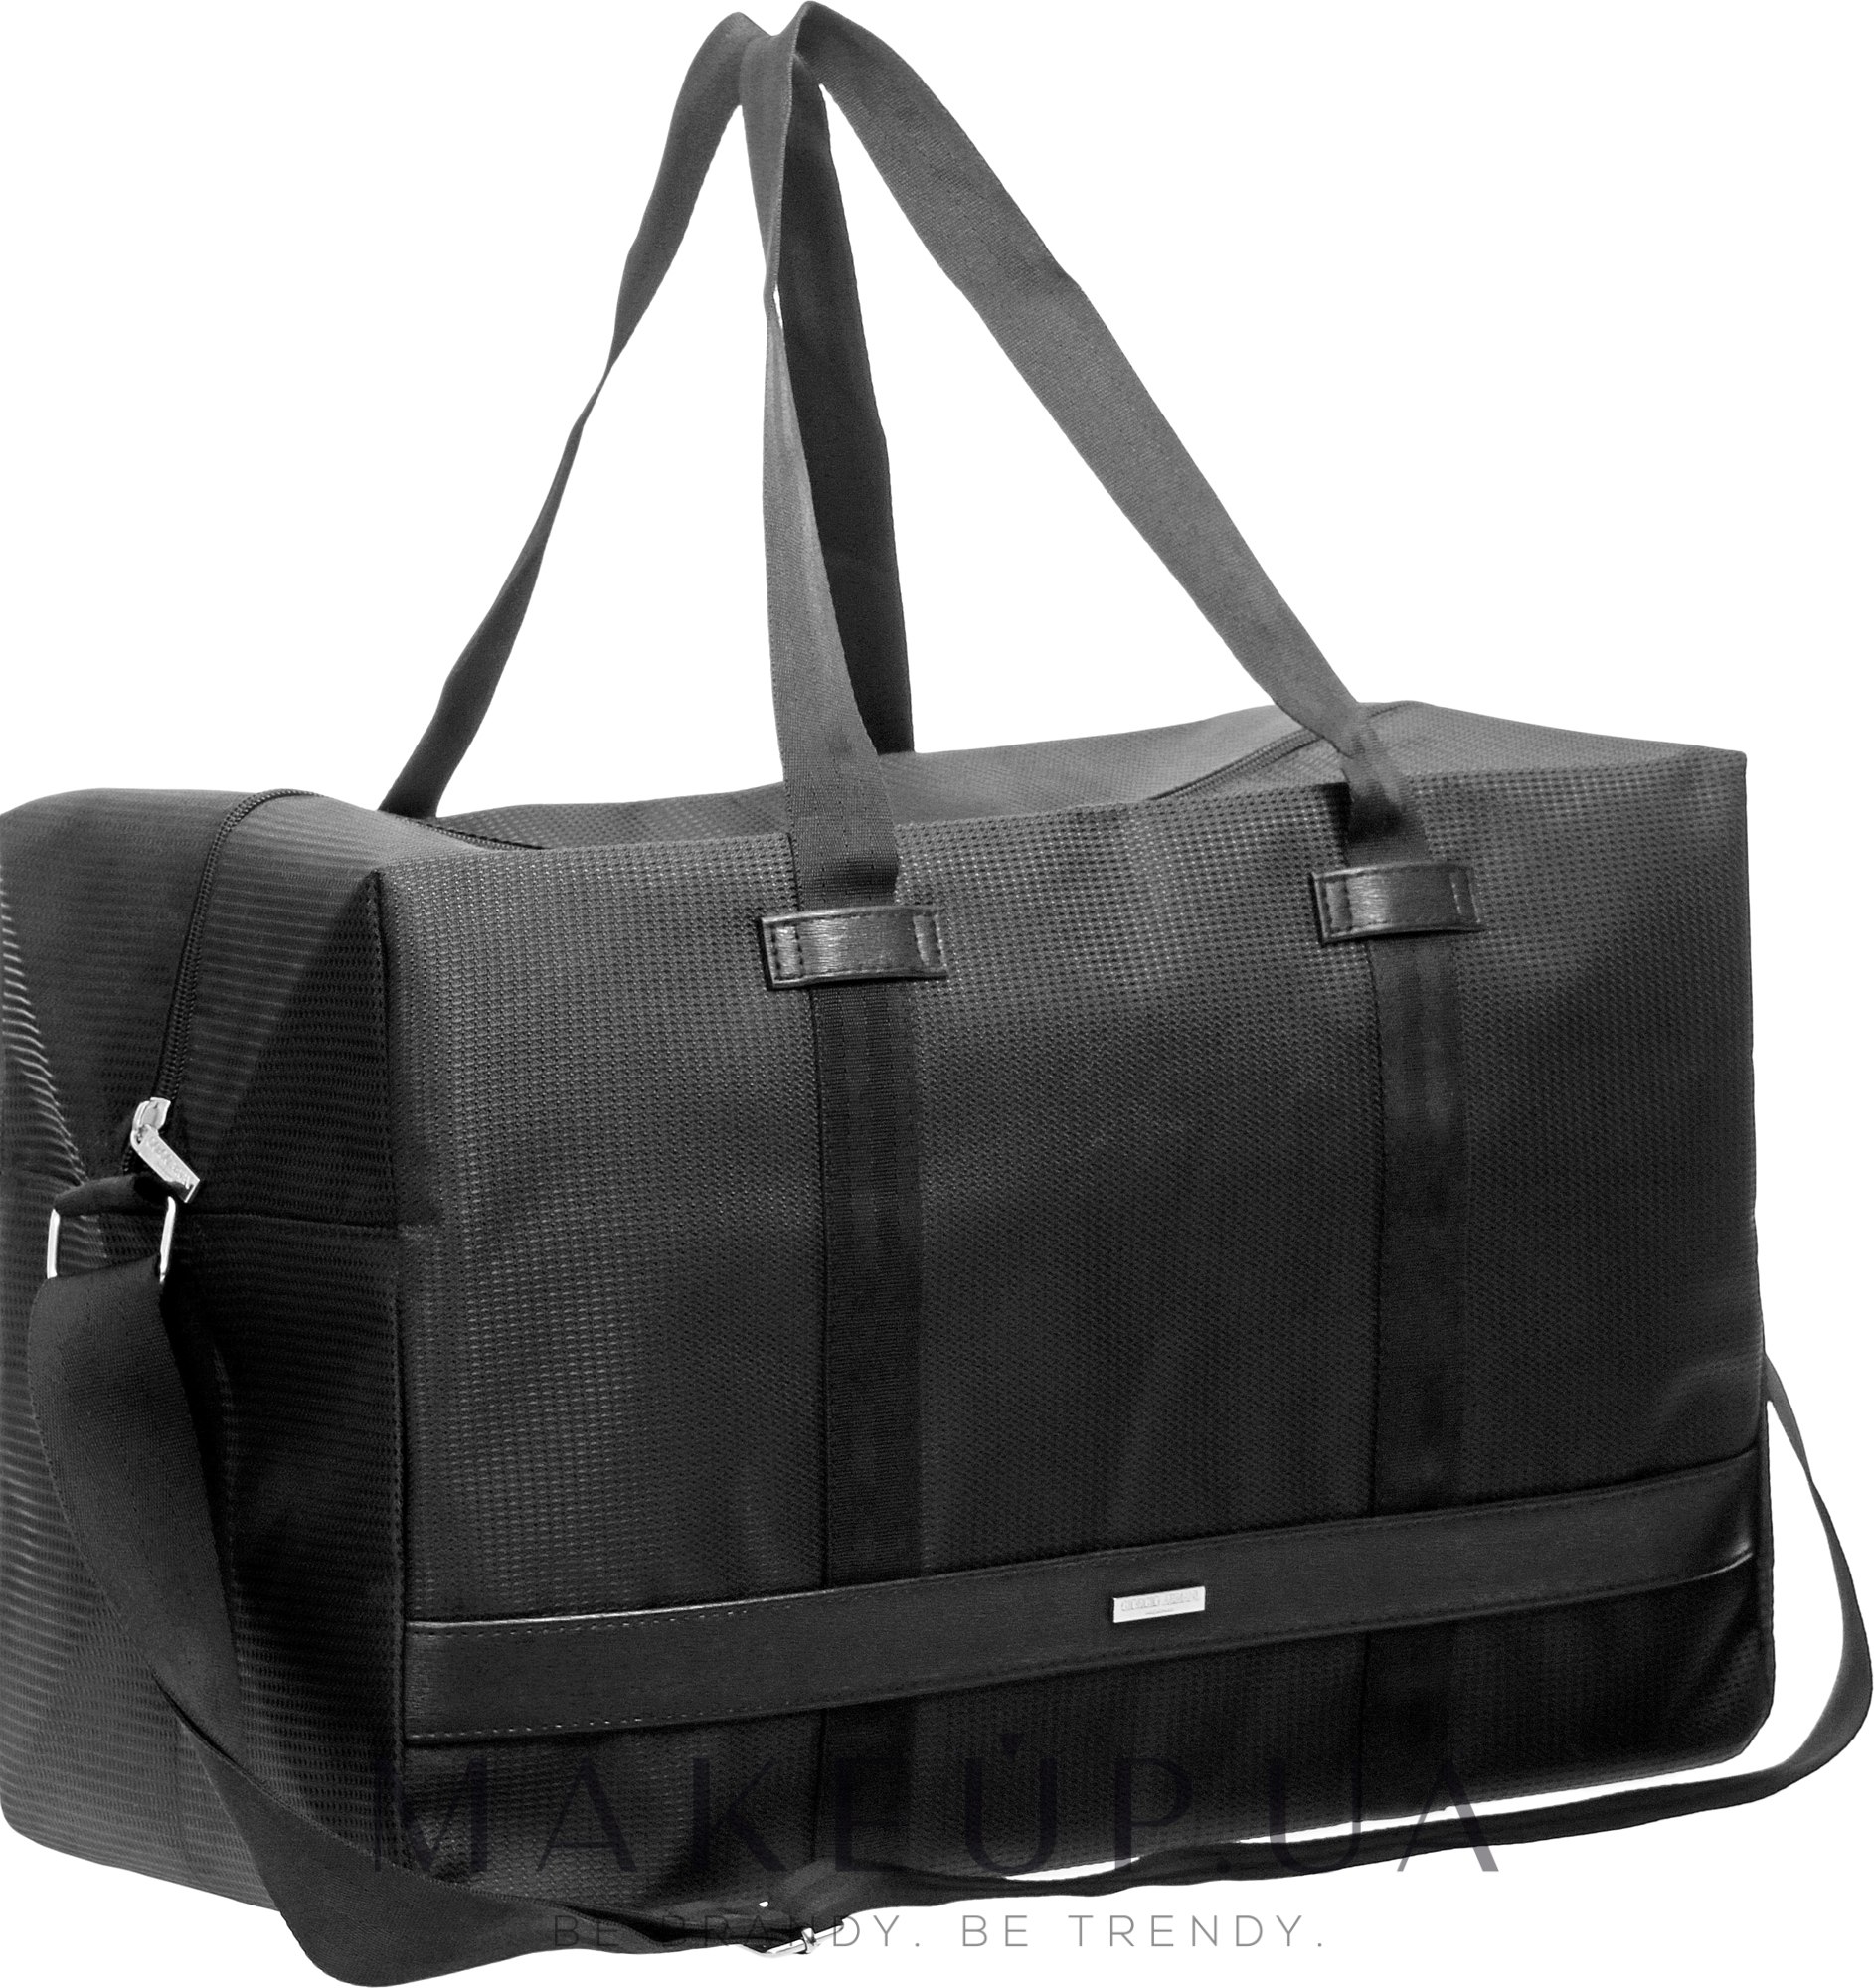 Giorgio Armani Man Sport Bag - Спортивная сумка: купить по ...